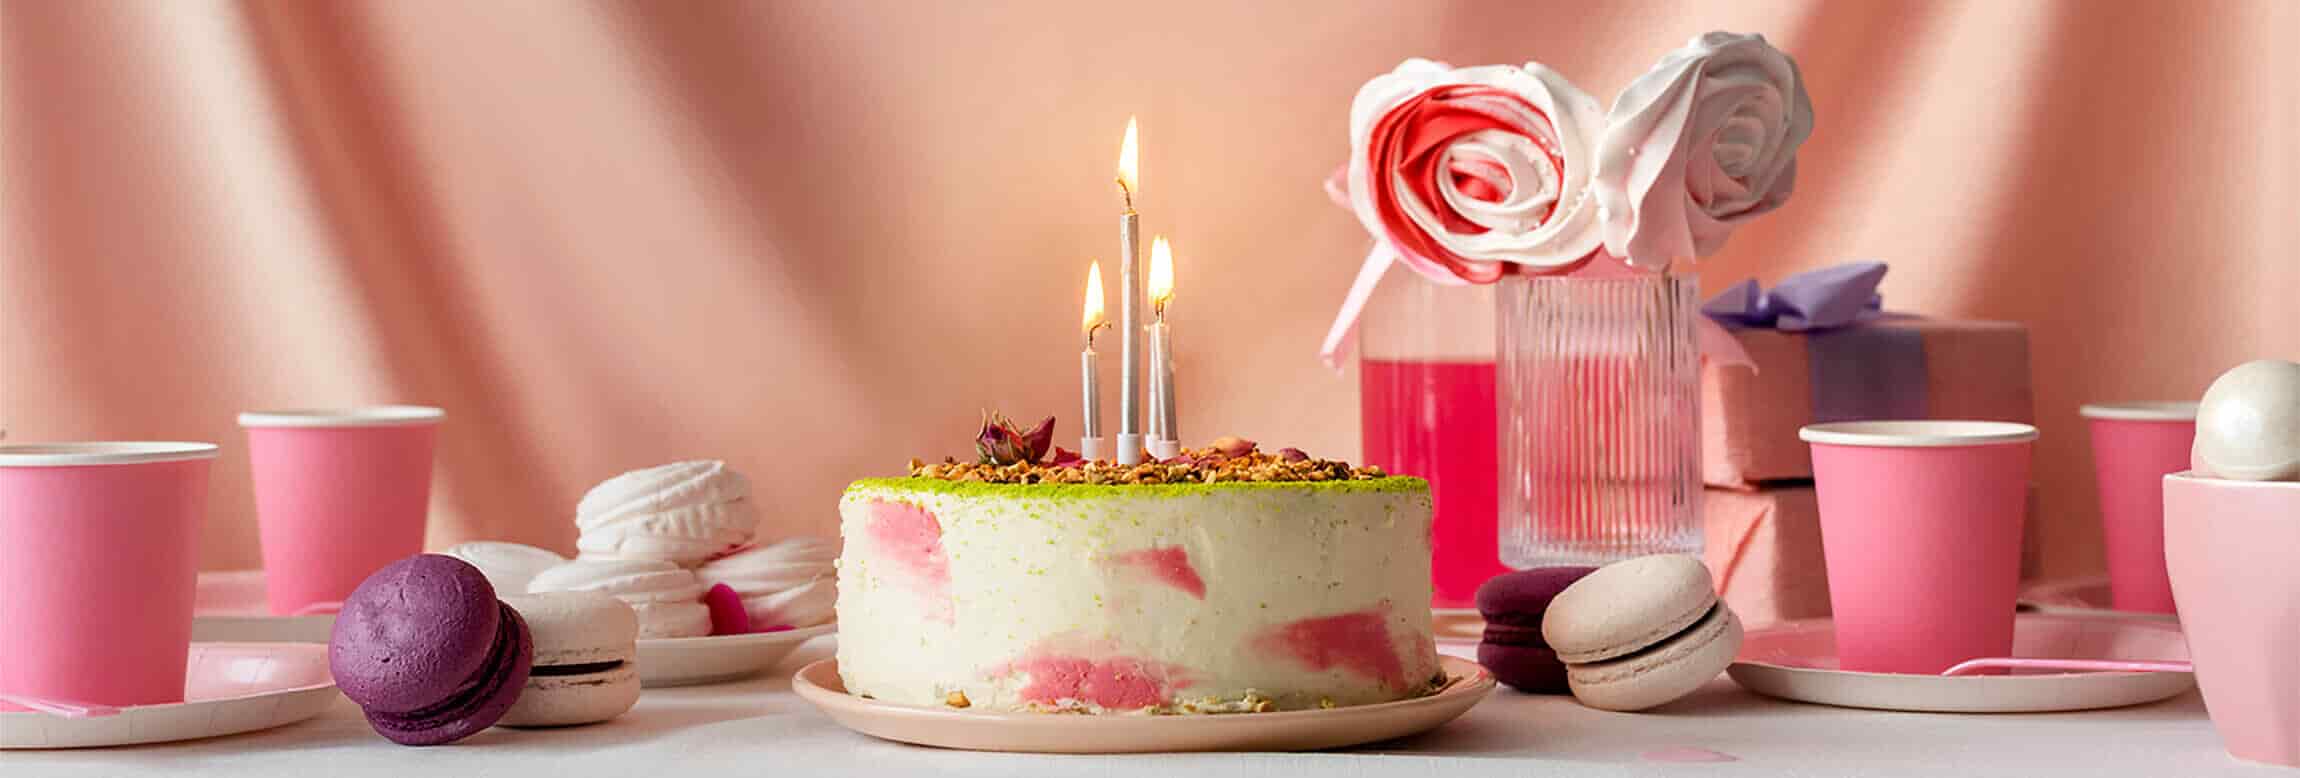 Birthday & Anniversary Cakes!